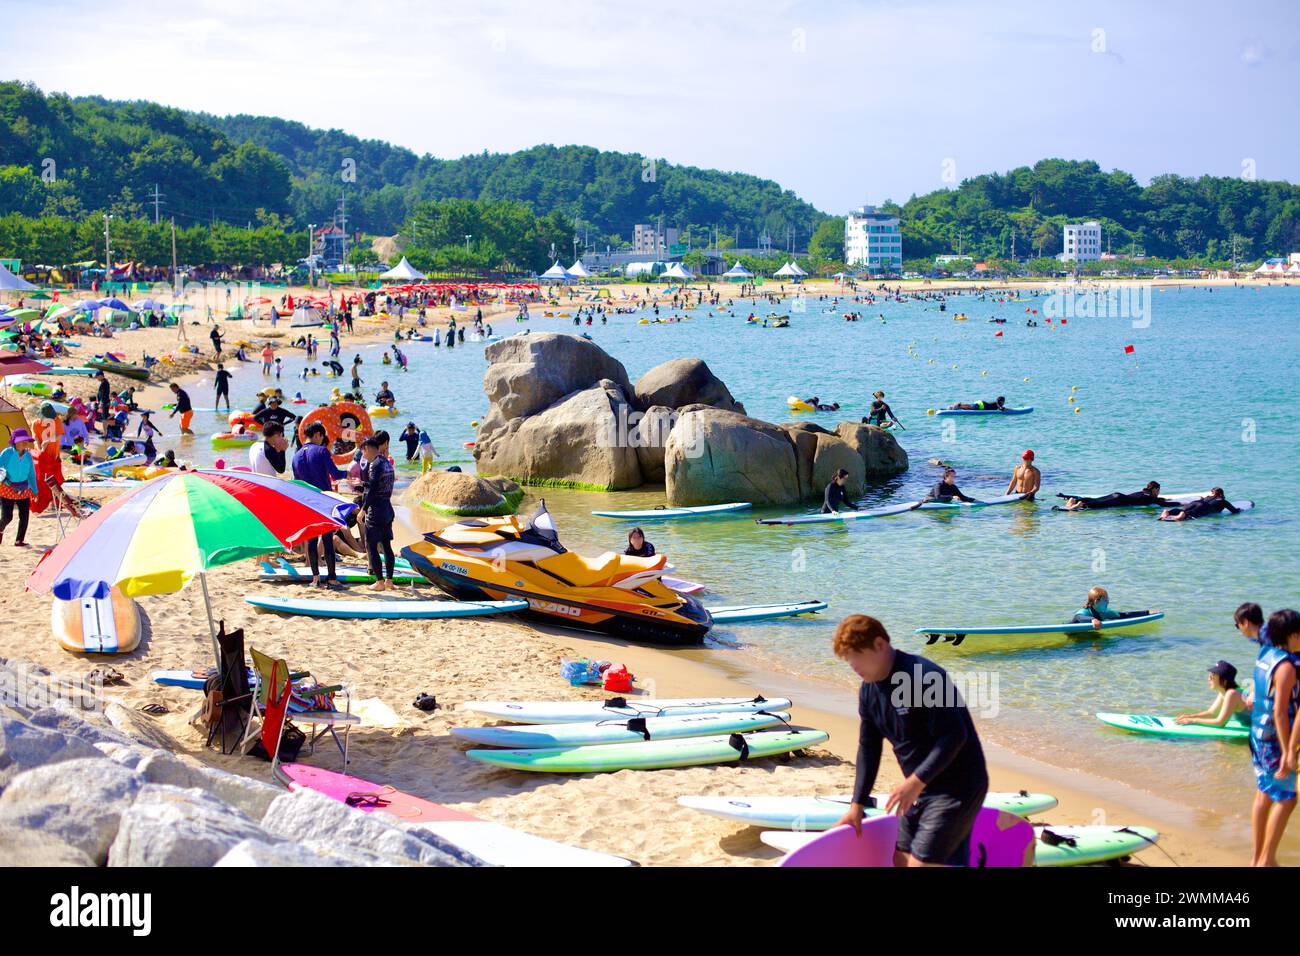 Contea di Yangyang, Corea del Sud - 30 luglio 2019: Jukdo Beach brulica di attività, con surfisti e tavole da surf nelle acque poco profonde e sabbiose Foto Stock